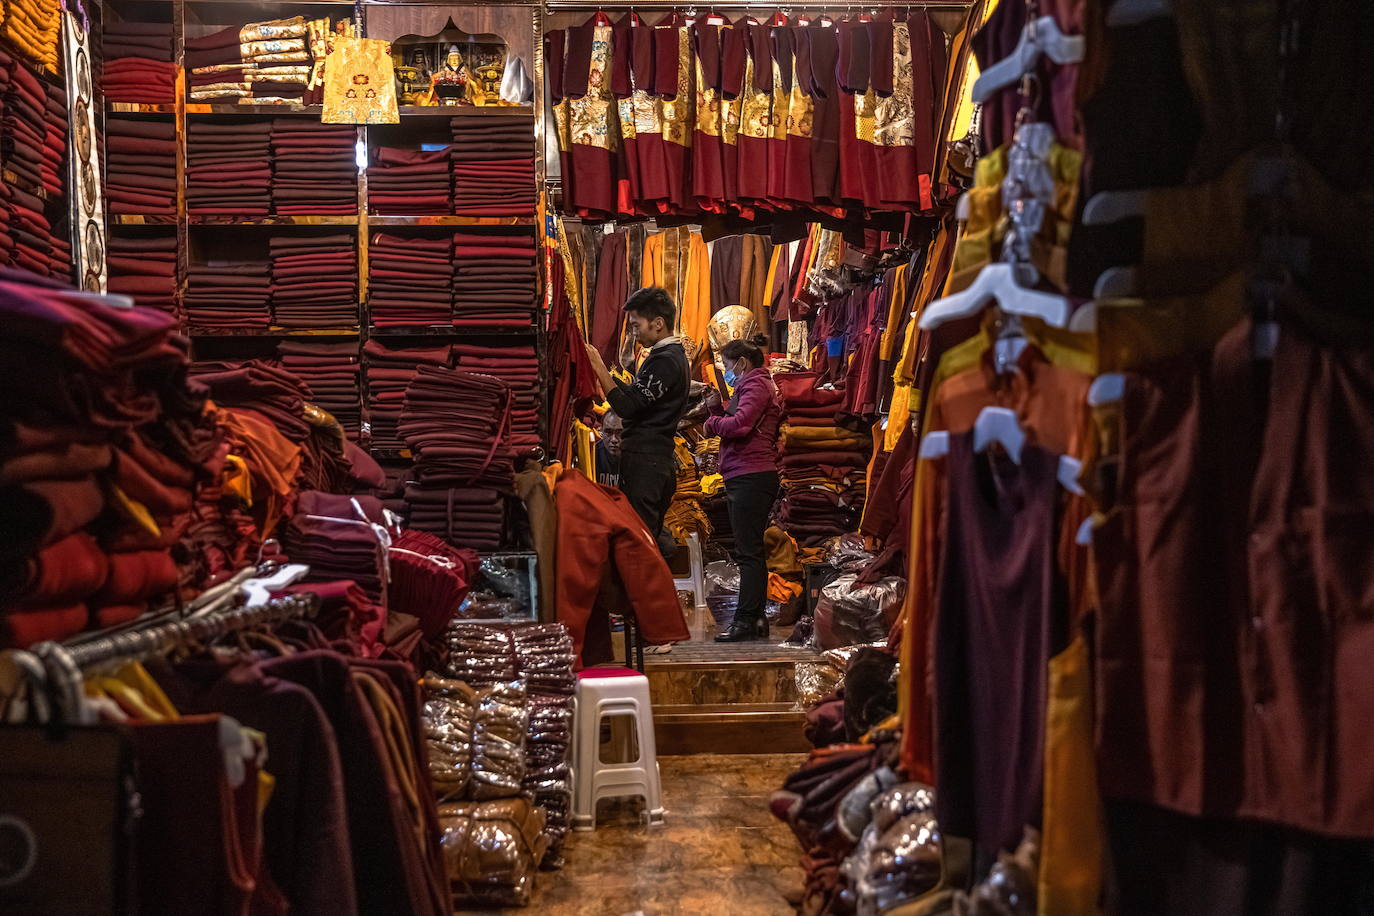 Tíbet ya no es tan pobre